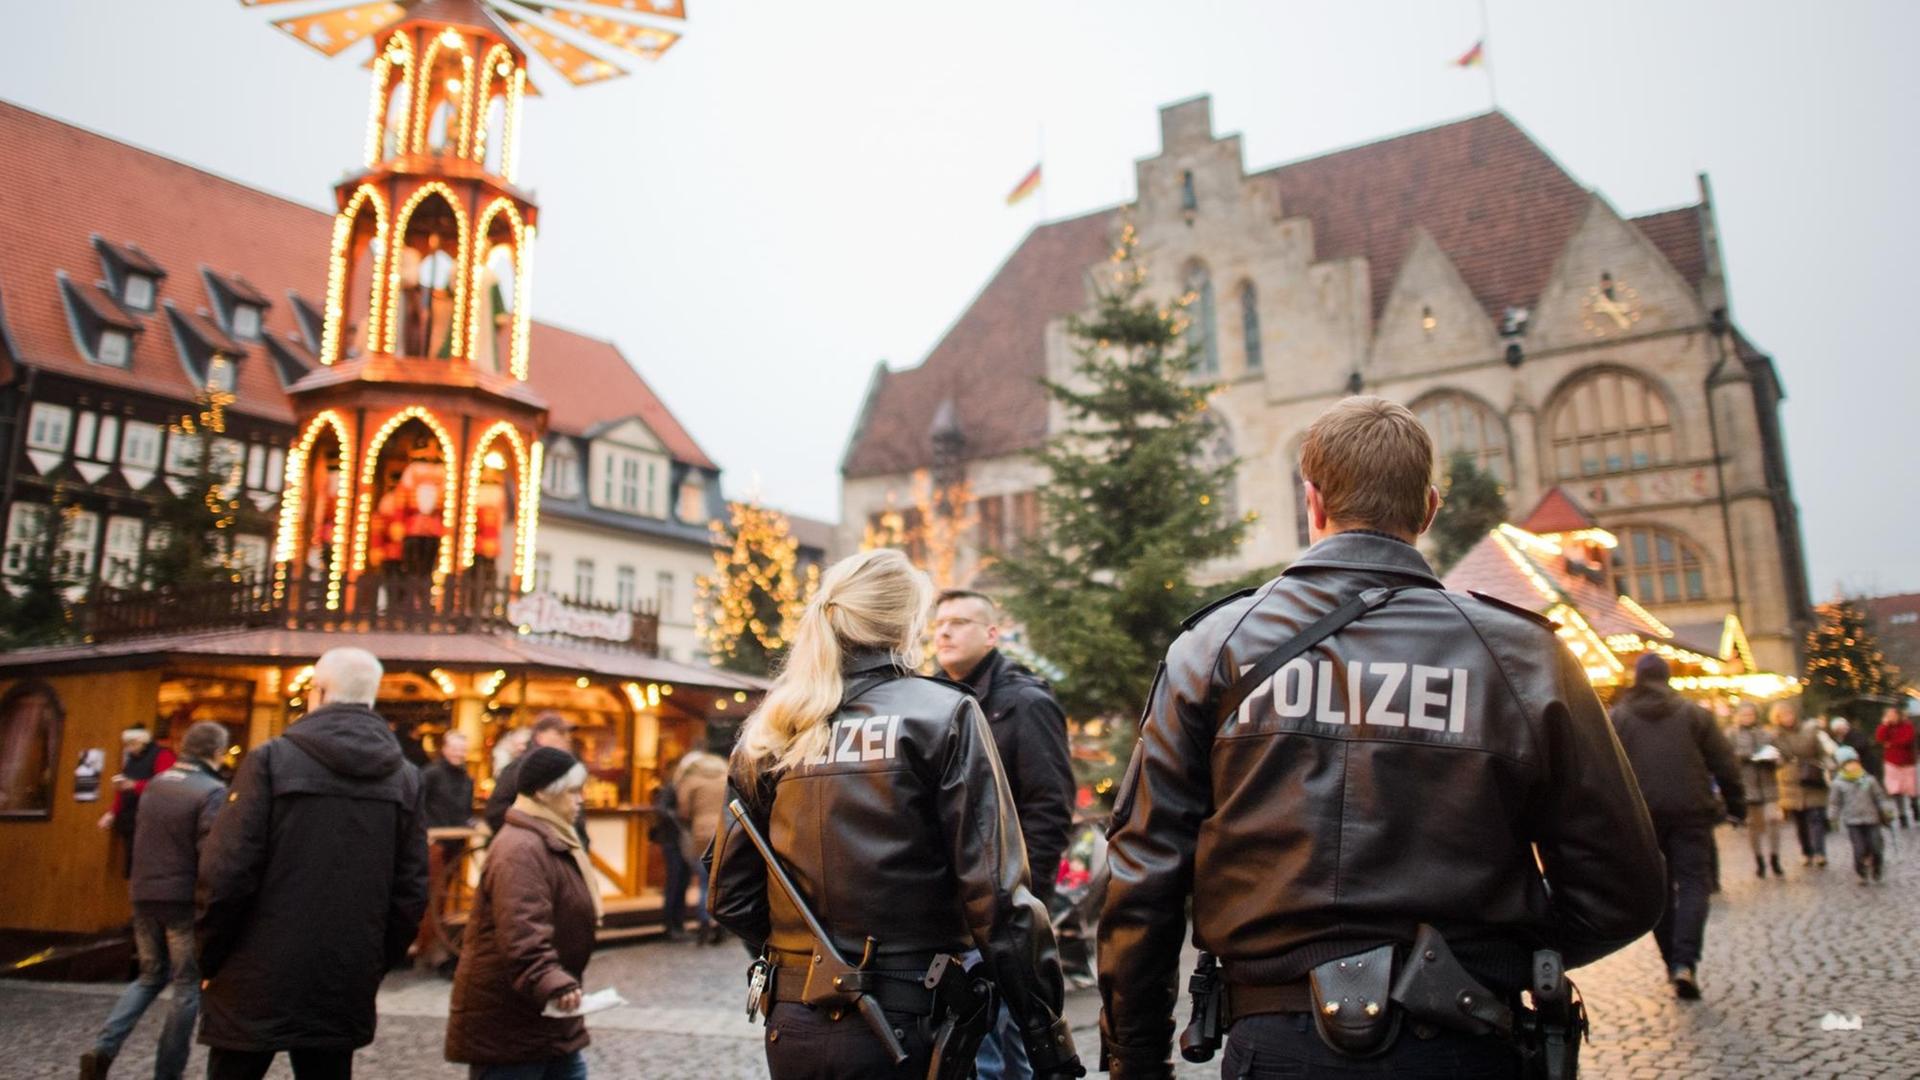 Erhöhte Sicherheitsmaßnahmen nach dem Berliner Anschlag: Polizisten auf einem Weihnachtsmarkt in Hildesheim (Niedersachsen)